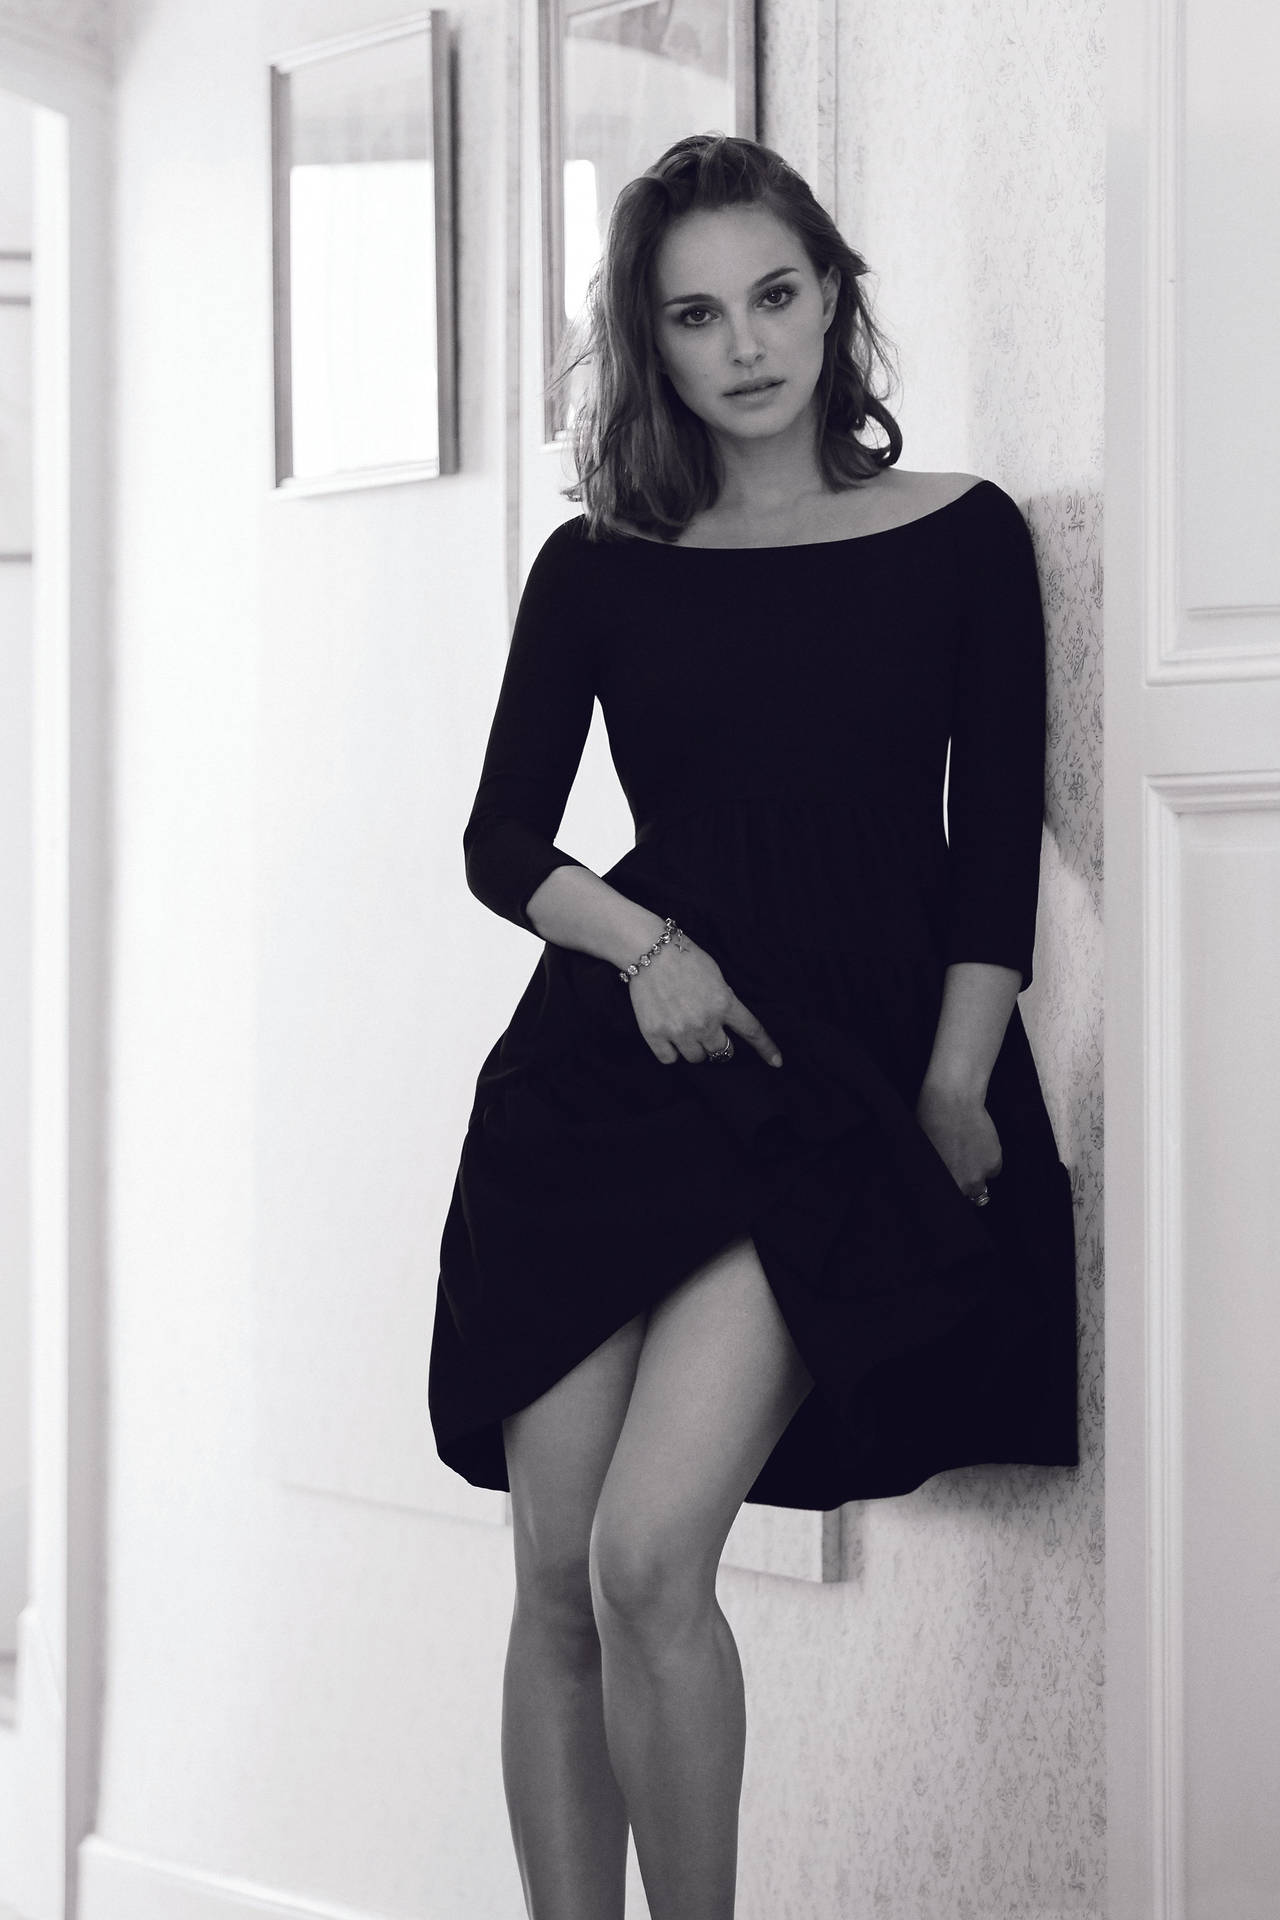 Smashing Image Of Natalie Portman